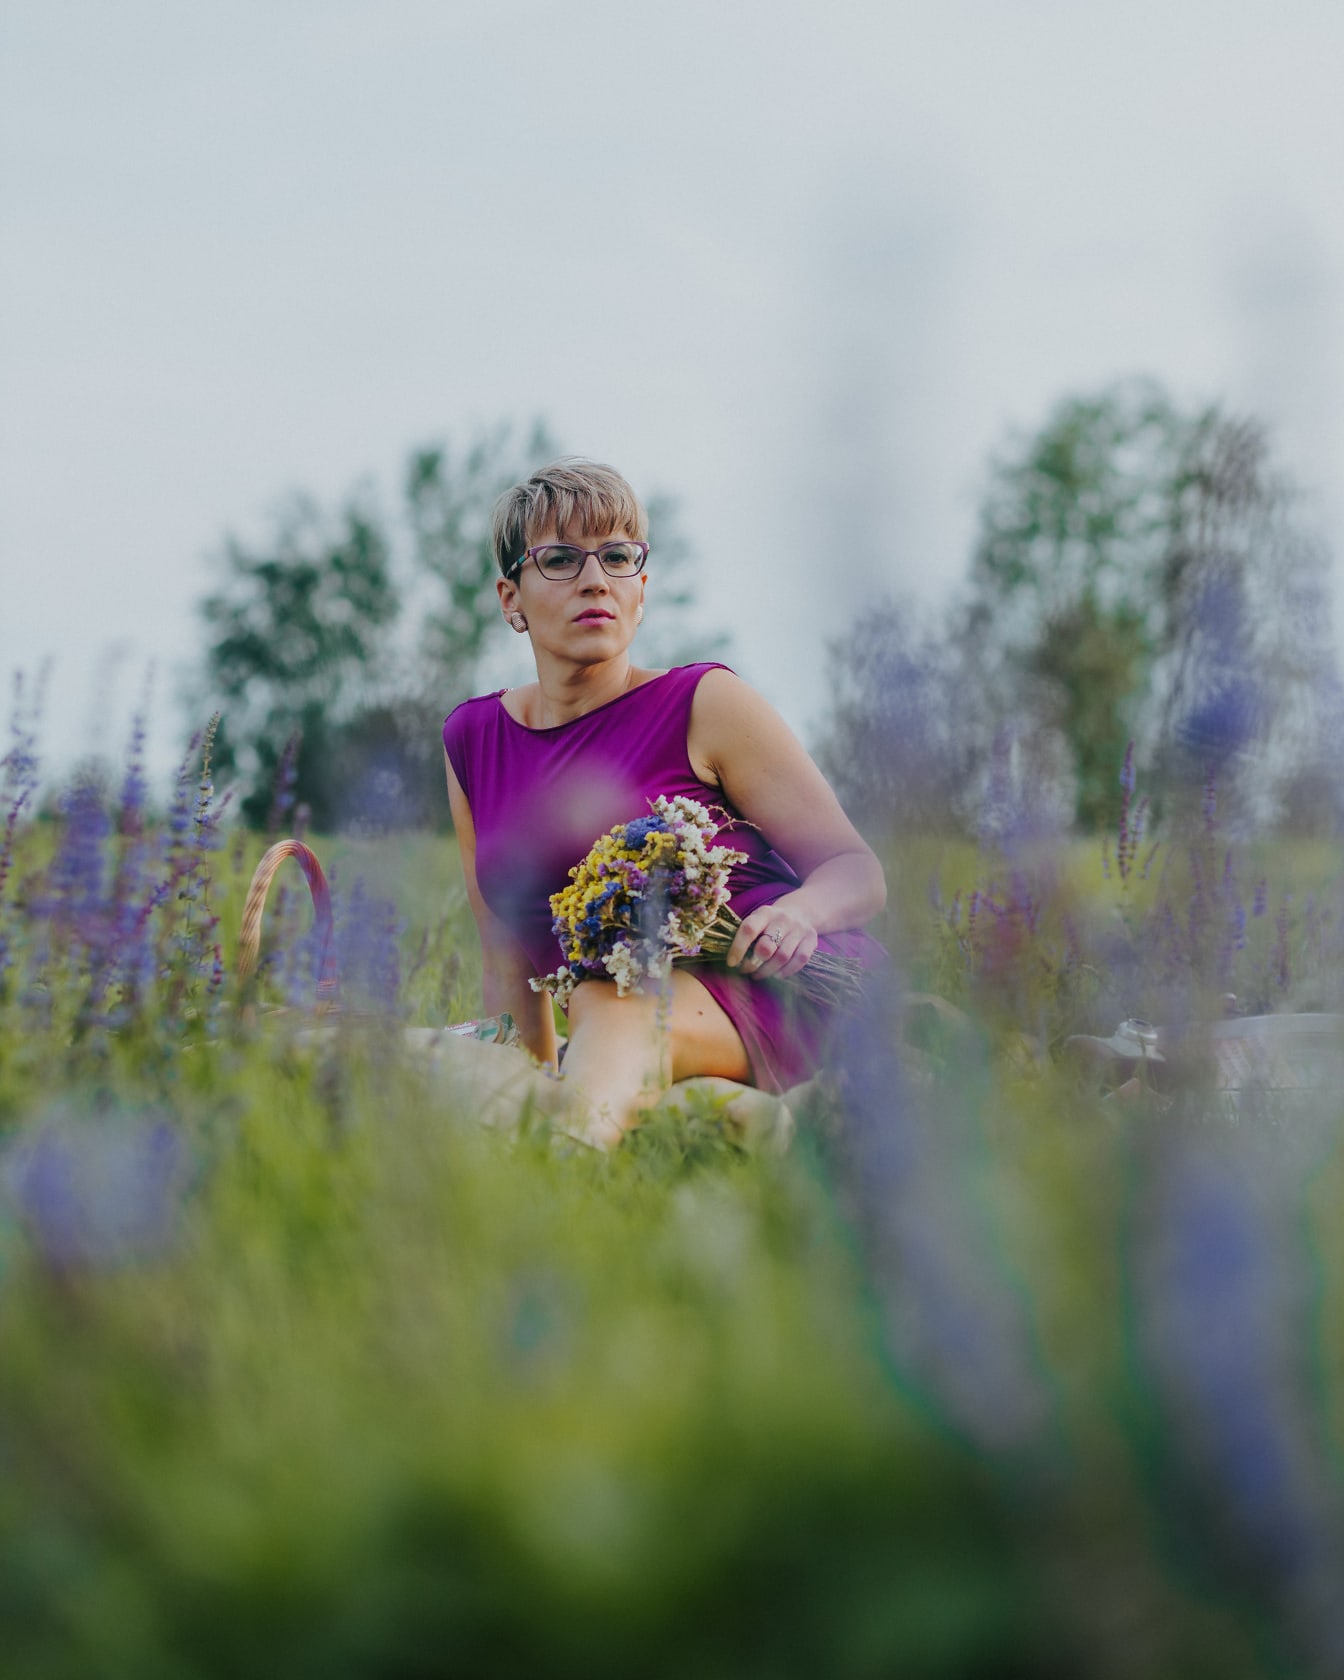 초원에 앉아있는 보라색 드레스를 입은 예쁜 여자의 초상화